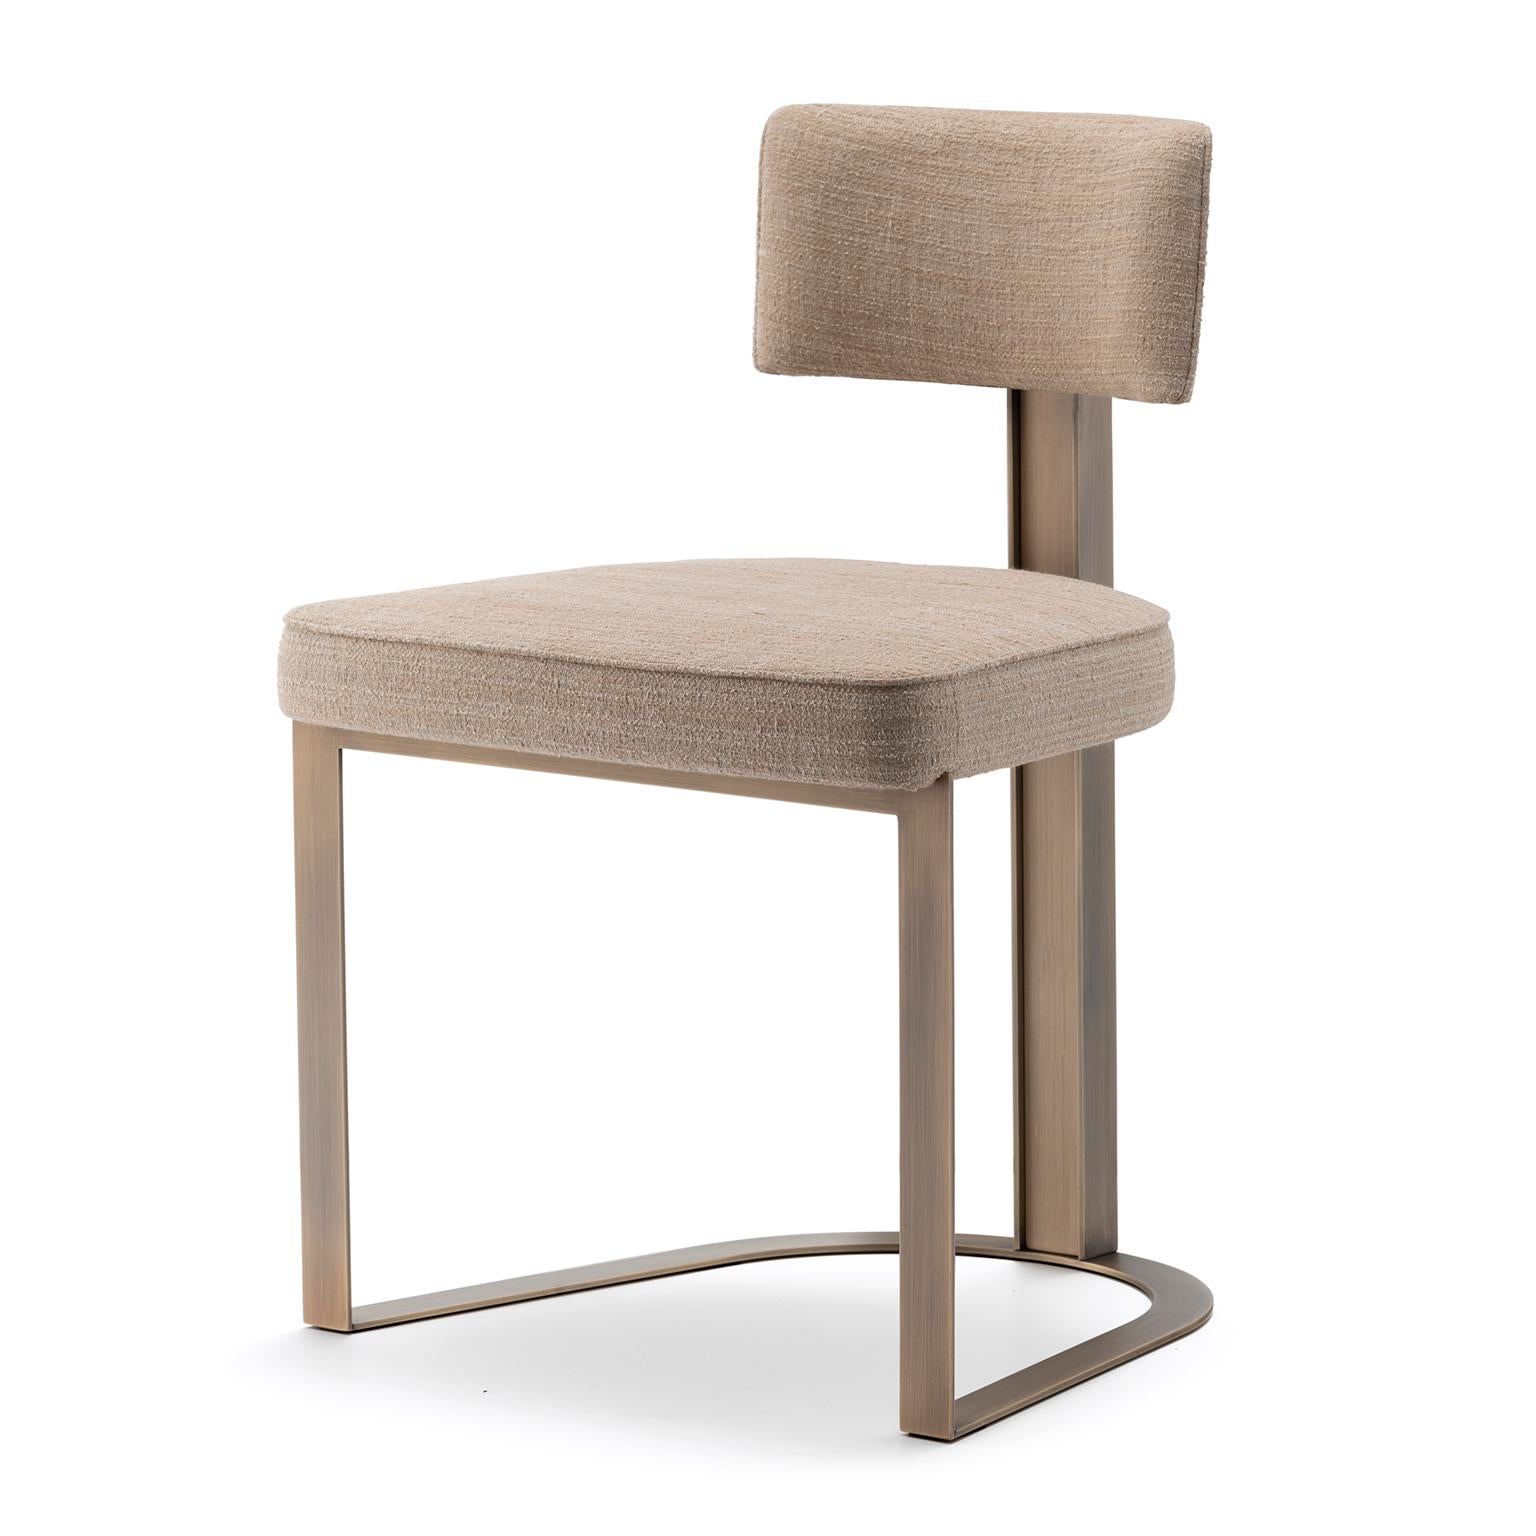 Sveva Chair in Corno Italiano with gloss finish and Burnished Metal, Mod. 6042B In New Condition For Sale In Recanati, Macerata